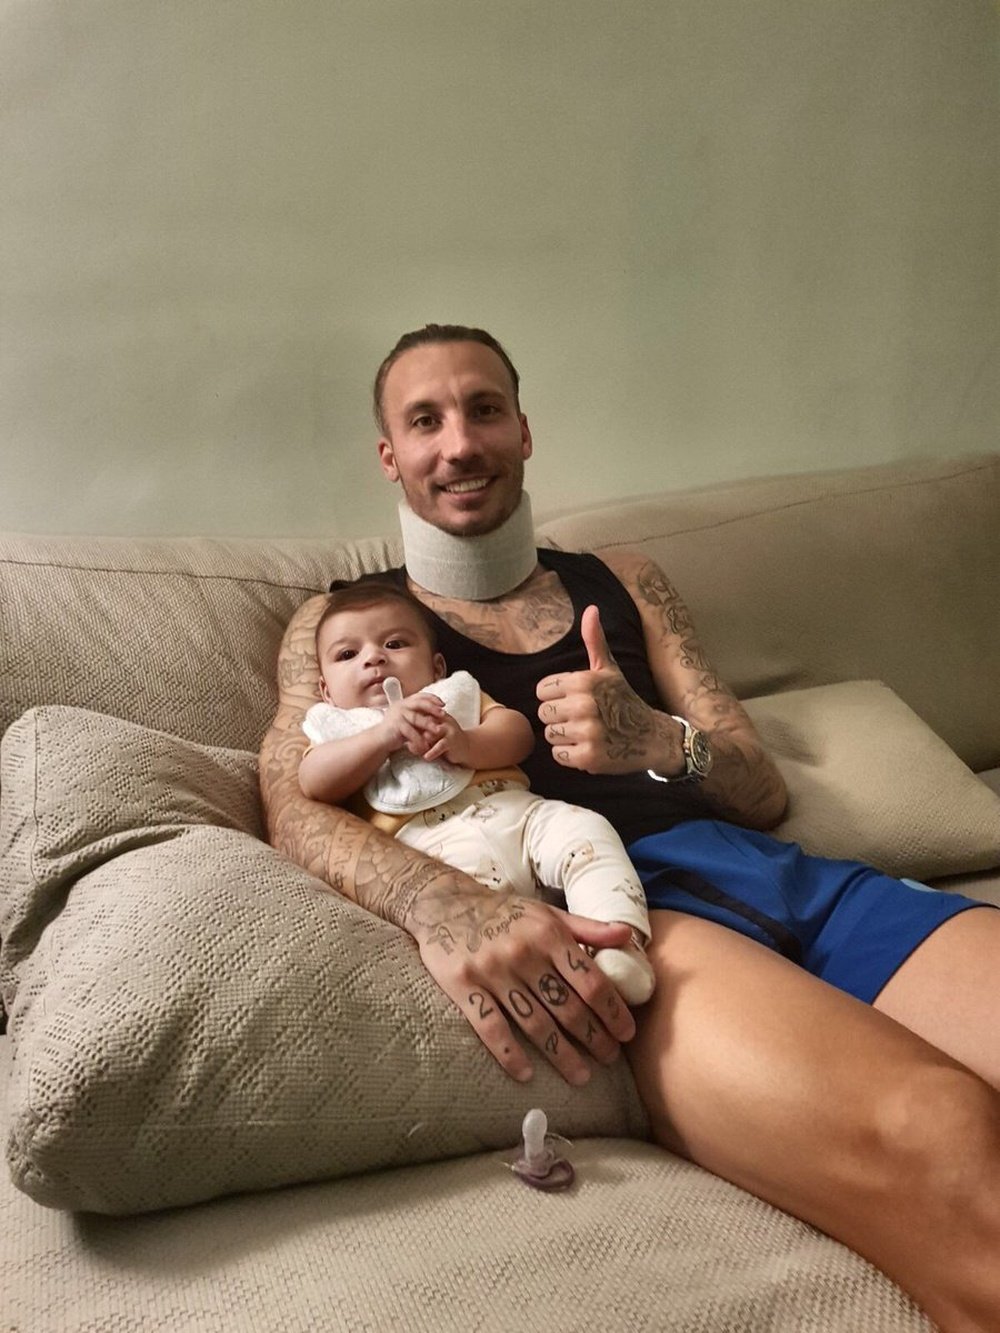 Alexis Ruano ya se recupera después de su golpe en el Alavés-Eibar. Twitter/Alexis Ruano